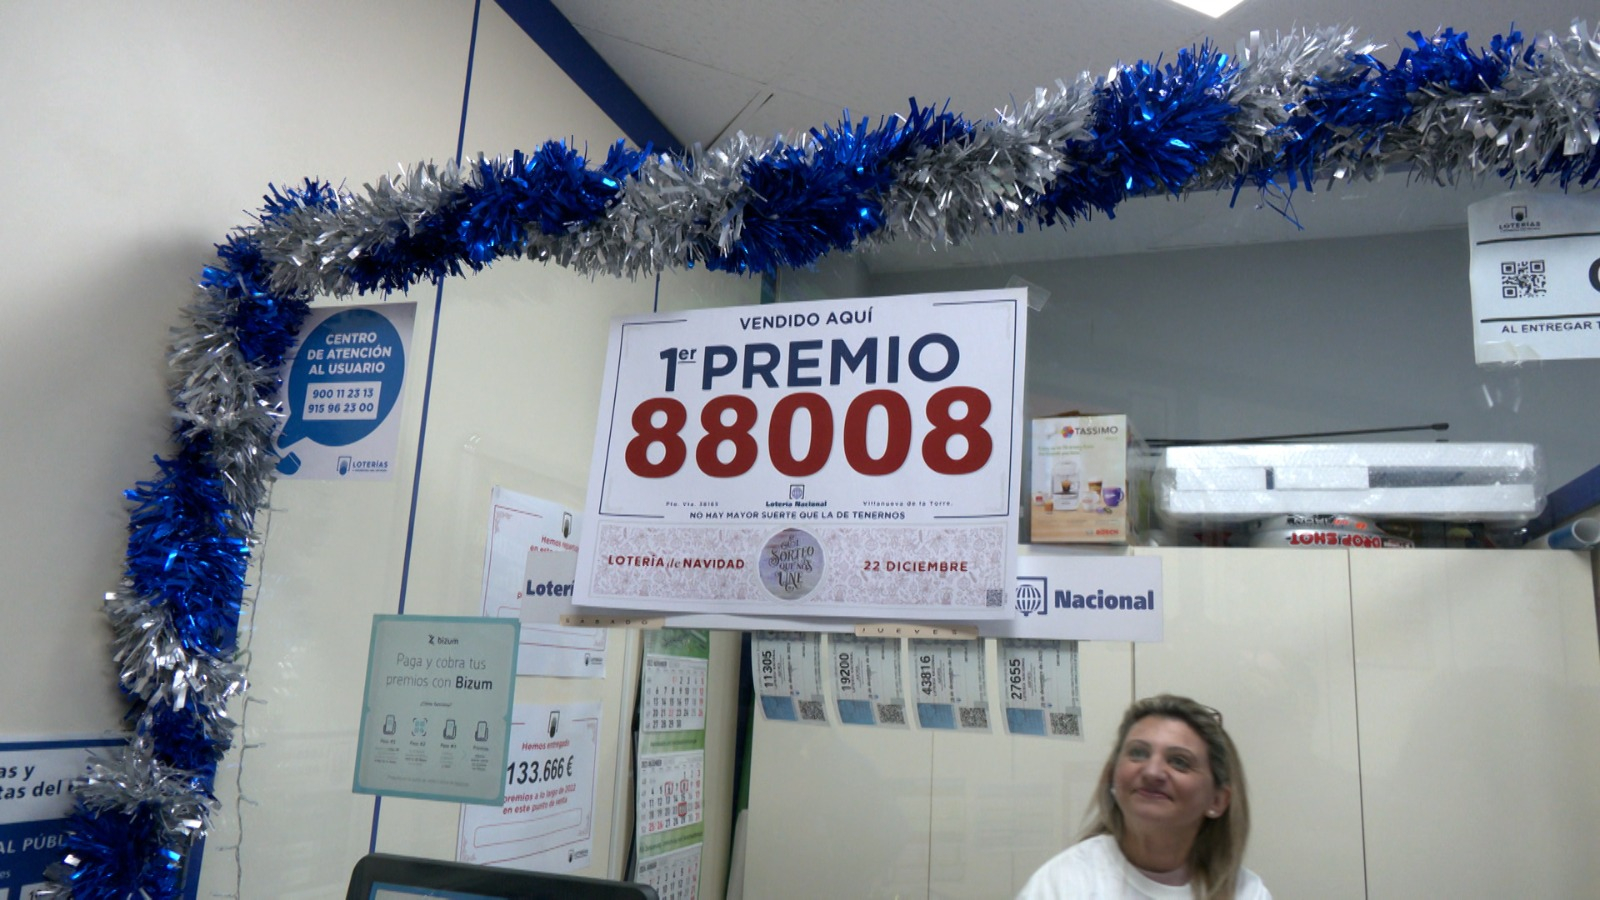 Imagen cortesía de la Administración de Lotería nº 9 de Guadalajara.